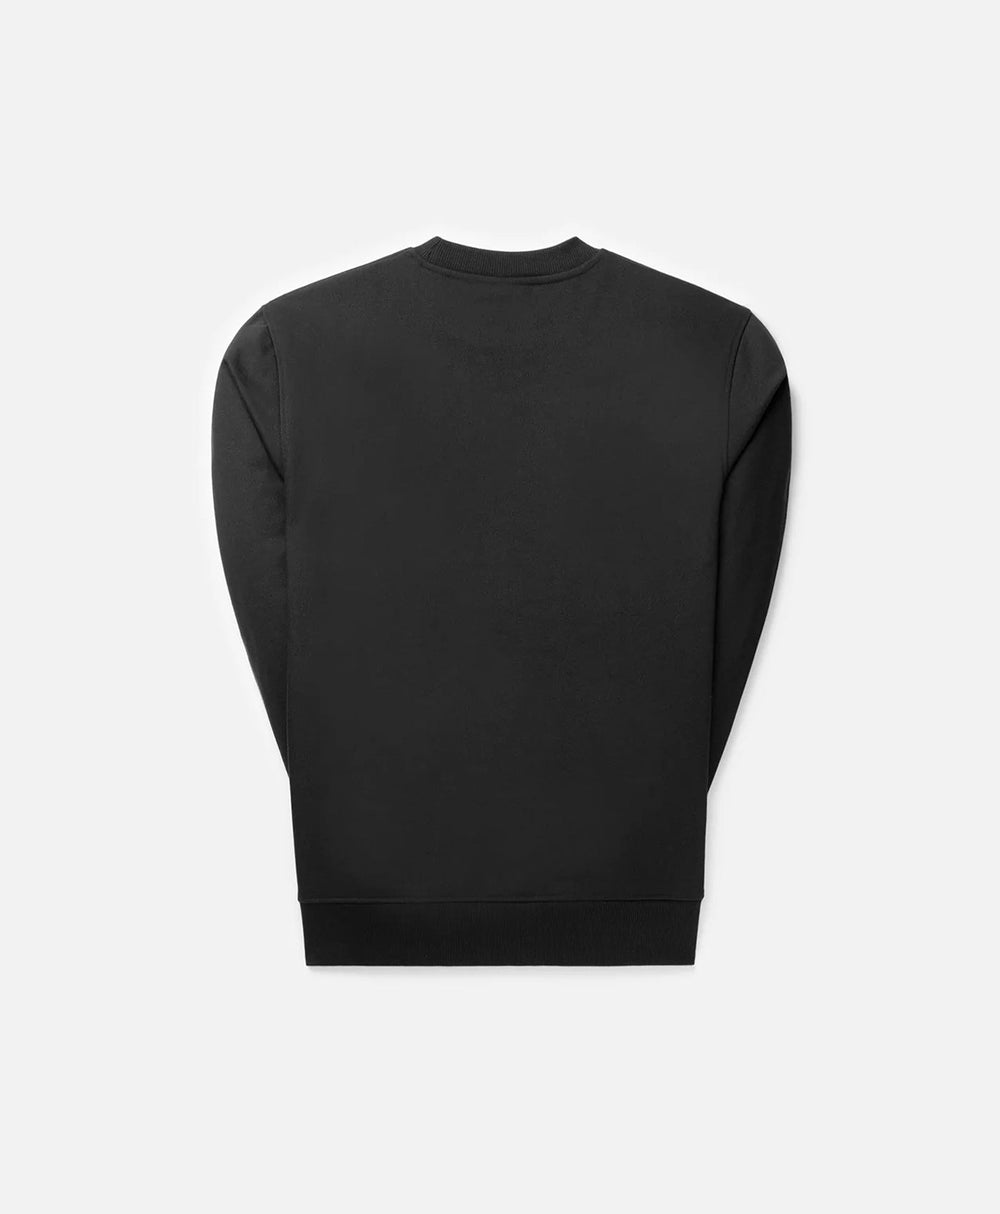 DP - Black Circle Sweater - Packshot - Rear